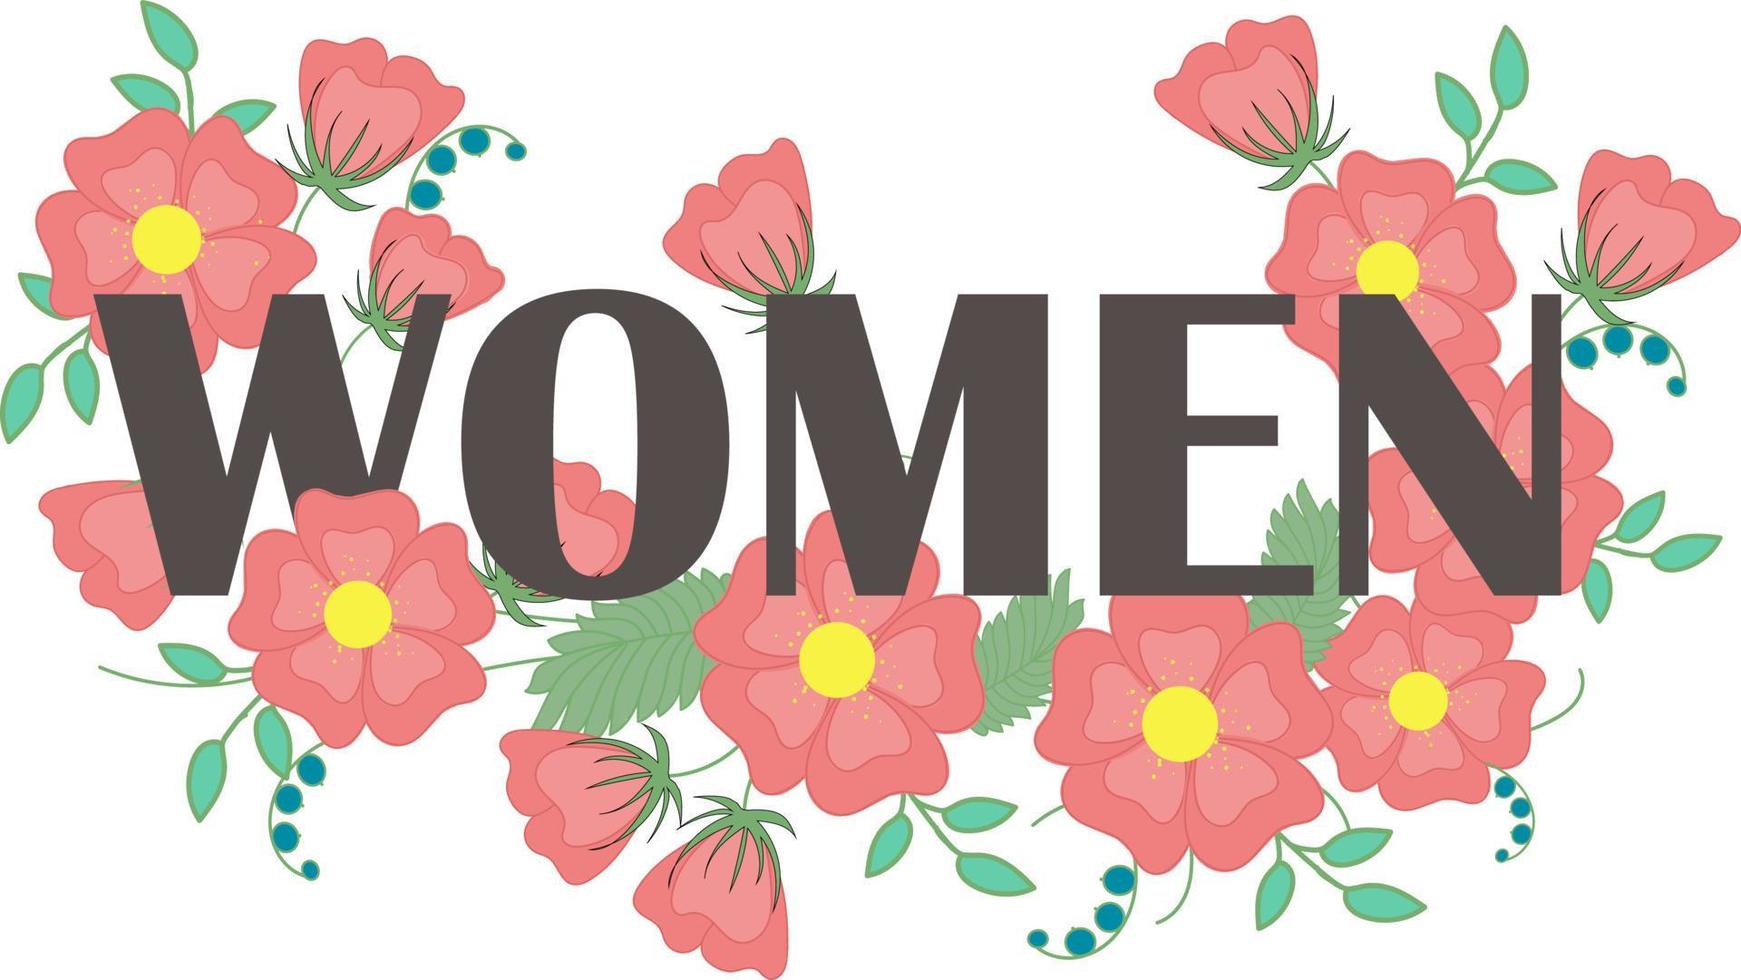 woord vrouwen met roze bloemen. vector